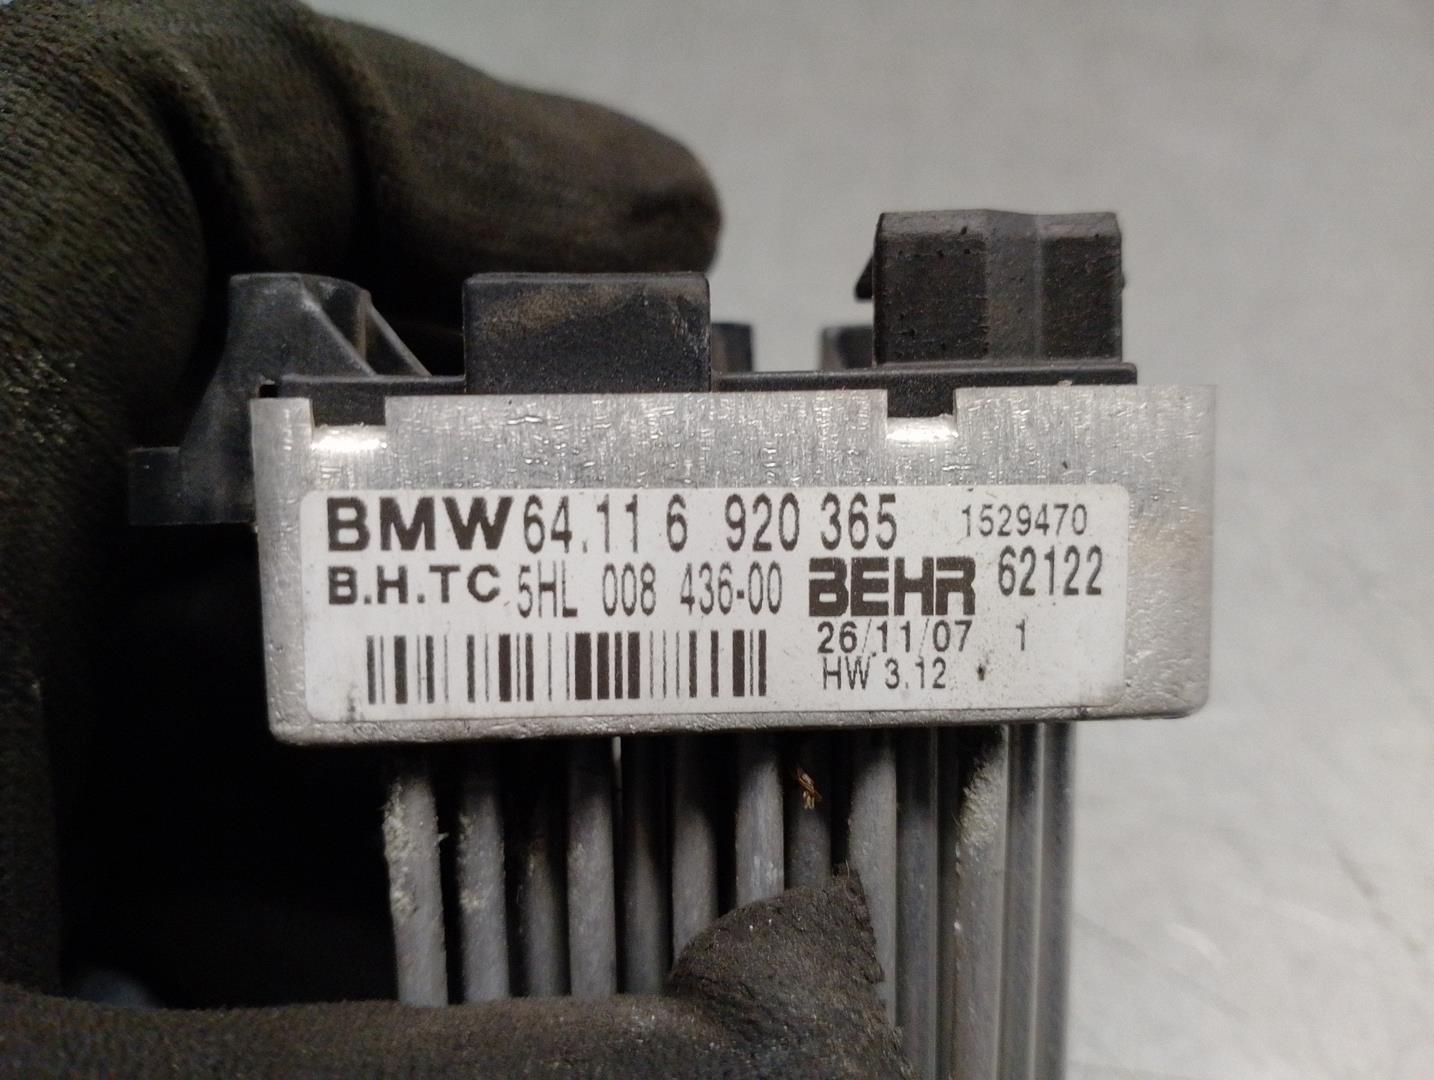 BMW X3 E83 (2003-2010) Interior Heater Resistor 64116920365, 5HL008436, BEHR 24212183